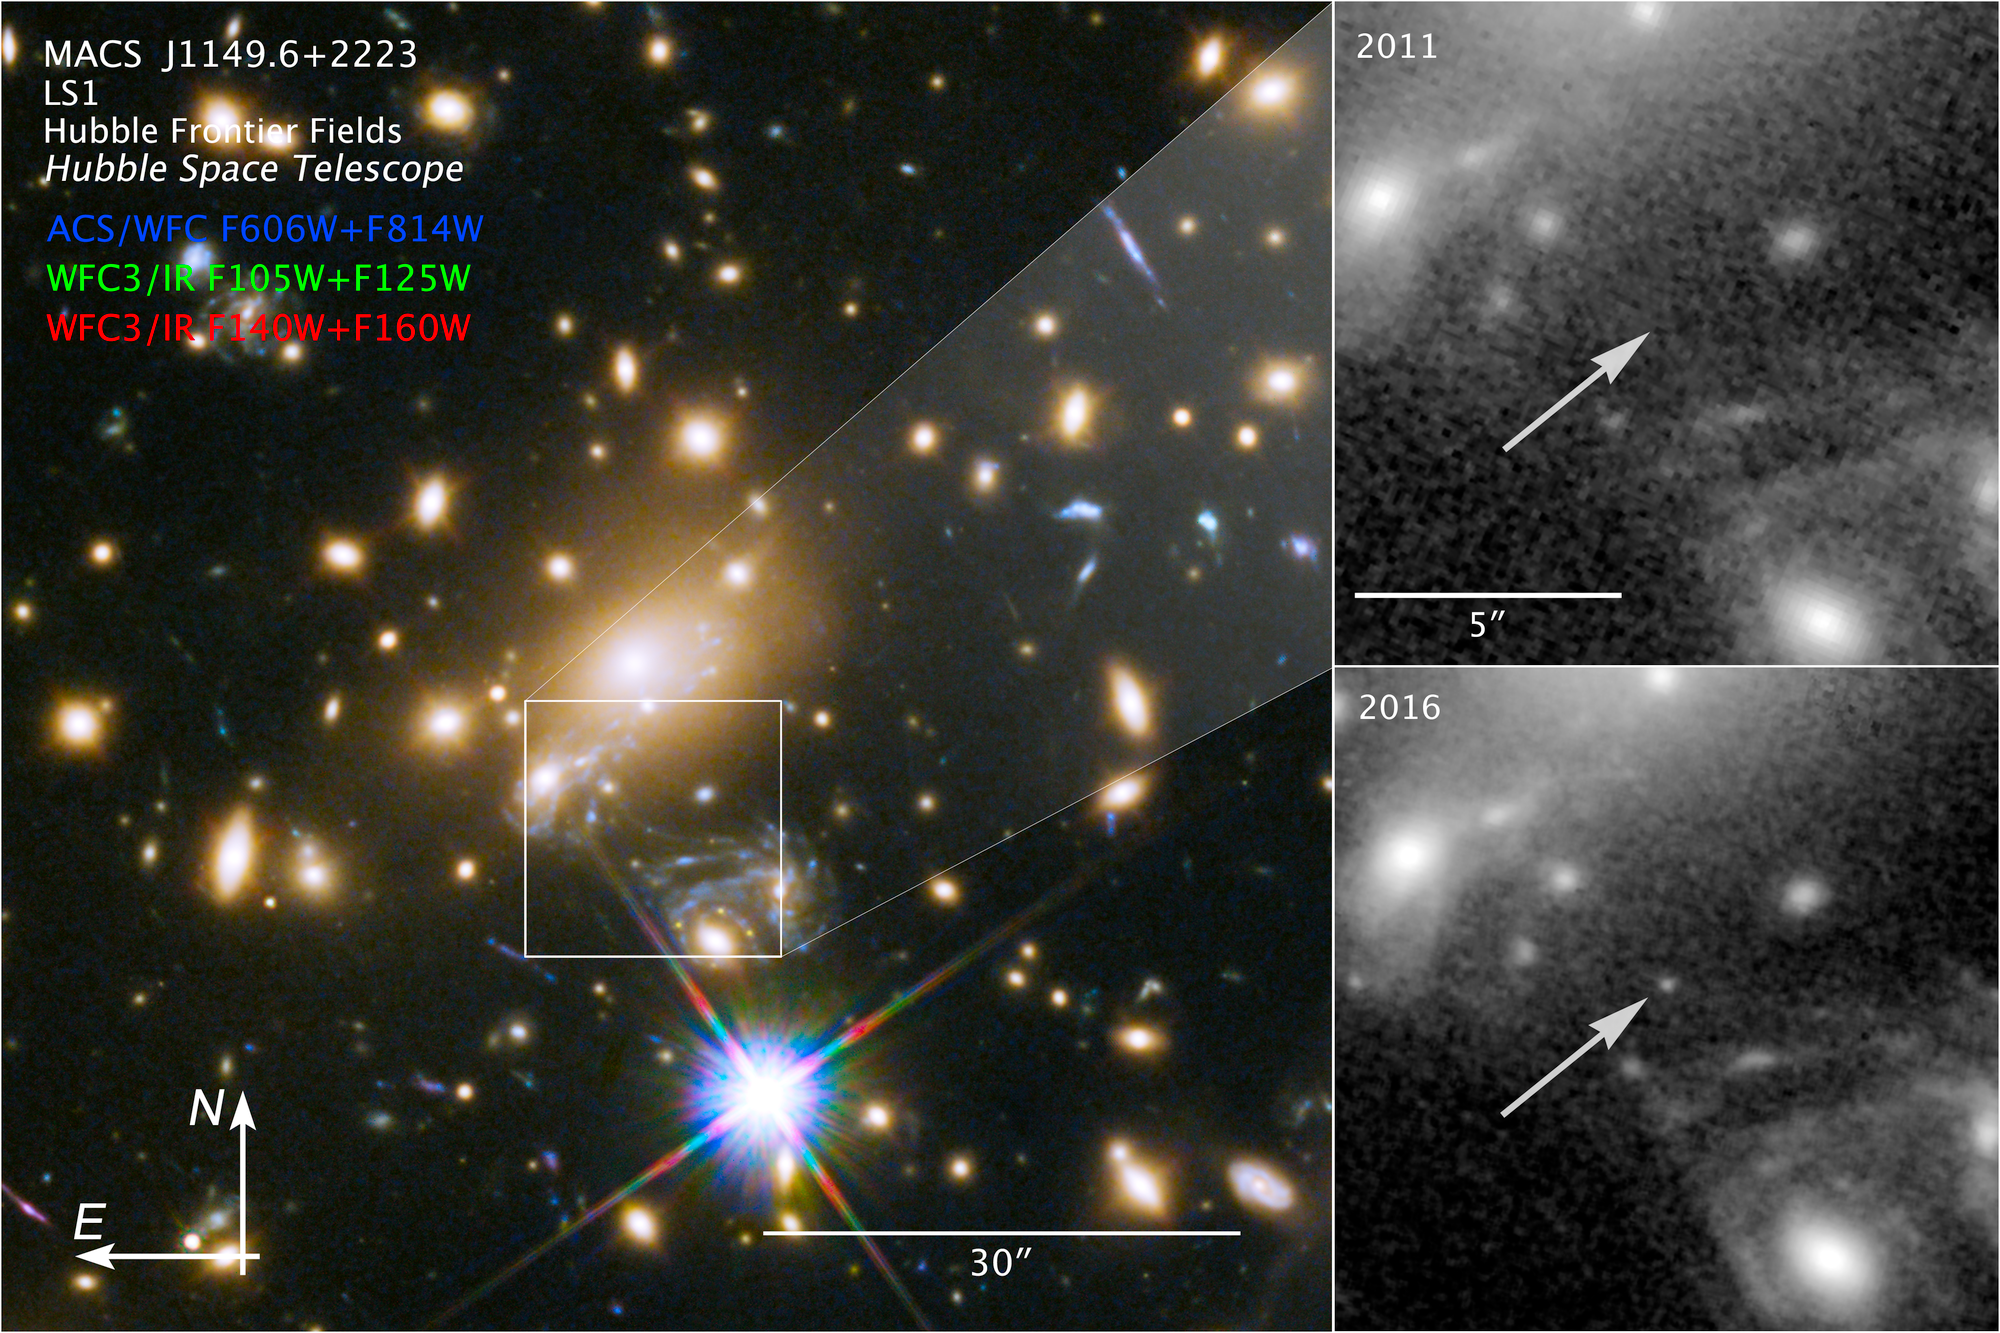 Esta imagen muestra la ubicación, orientación y filtros utilizados para obtener imágenes de MACS J1149 + 2223 Lensed Star 1, más conocida como Ícaro. Las dos imágenes de la derecha muestran cómo fue observada primero en 2011 y luego en 2016. Créditos: NASA, ESA, and P. Kelly (University of Minnesota).